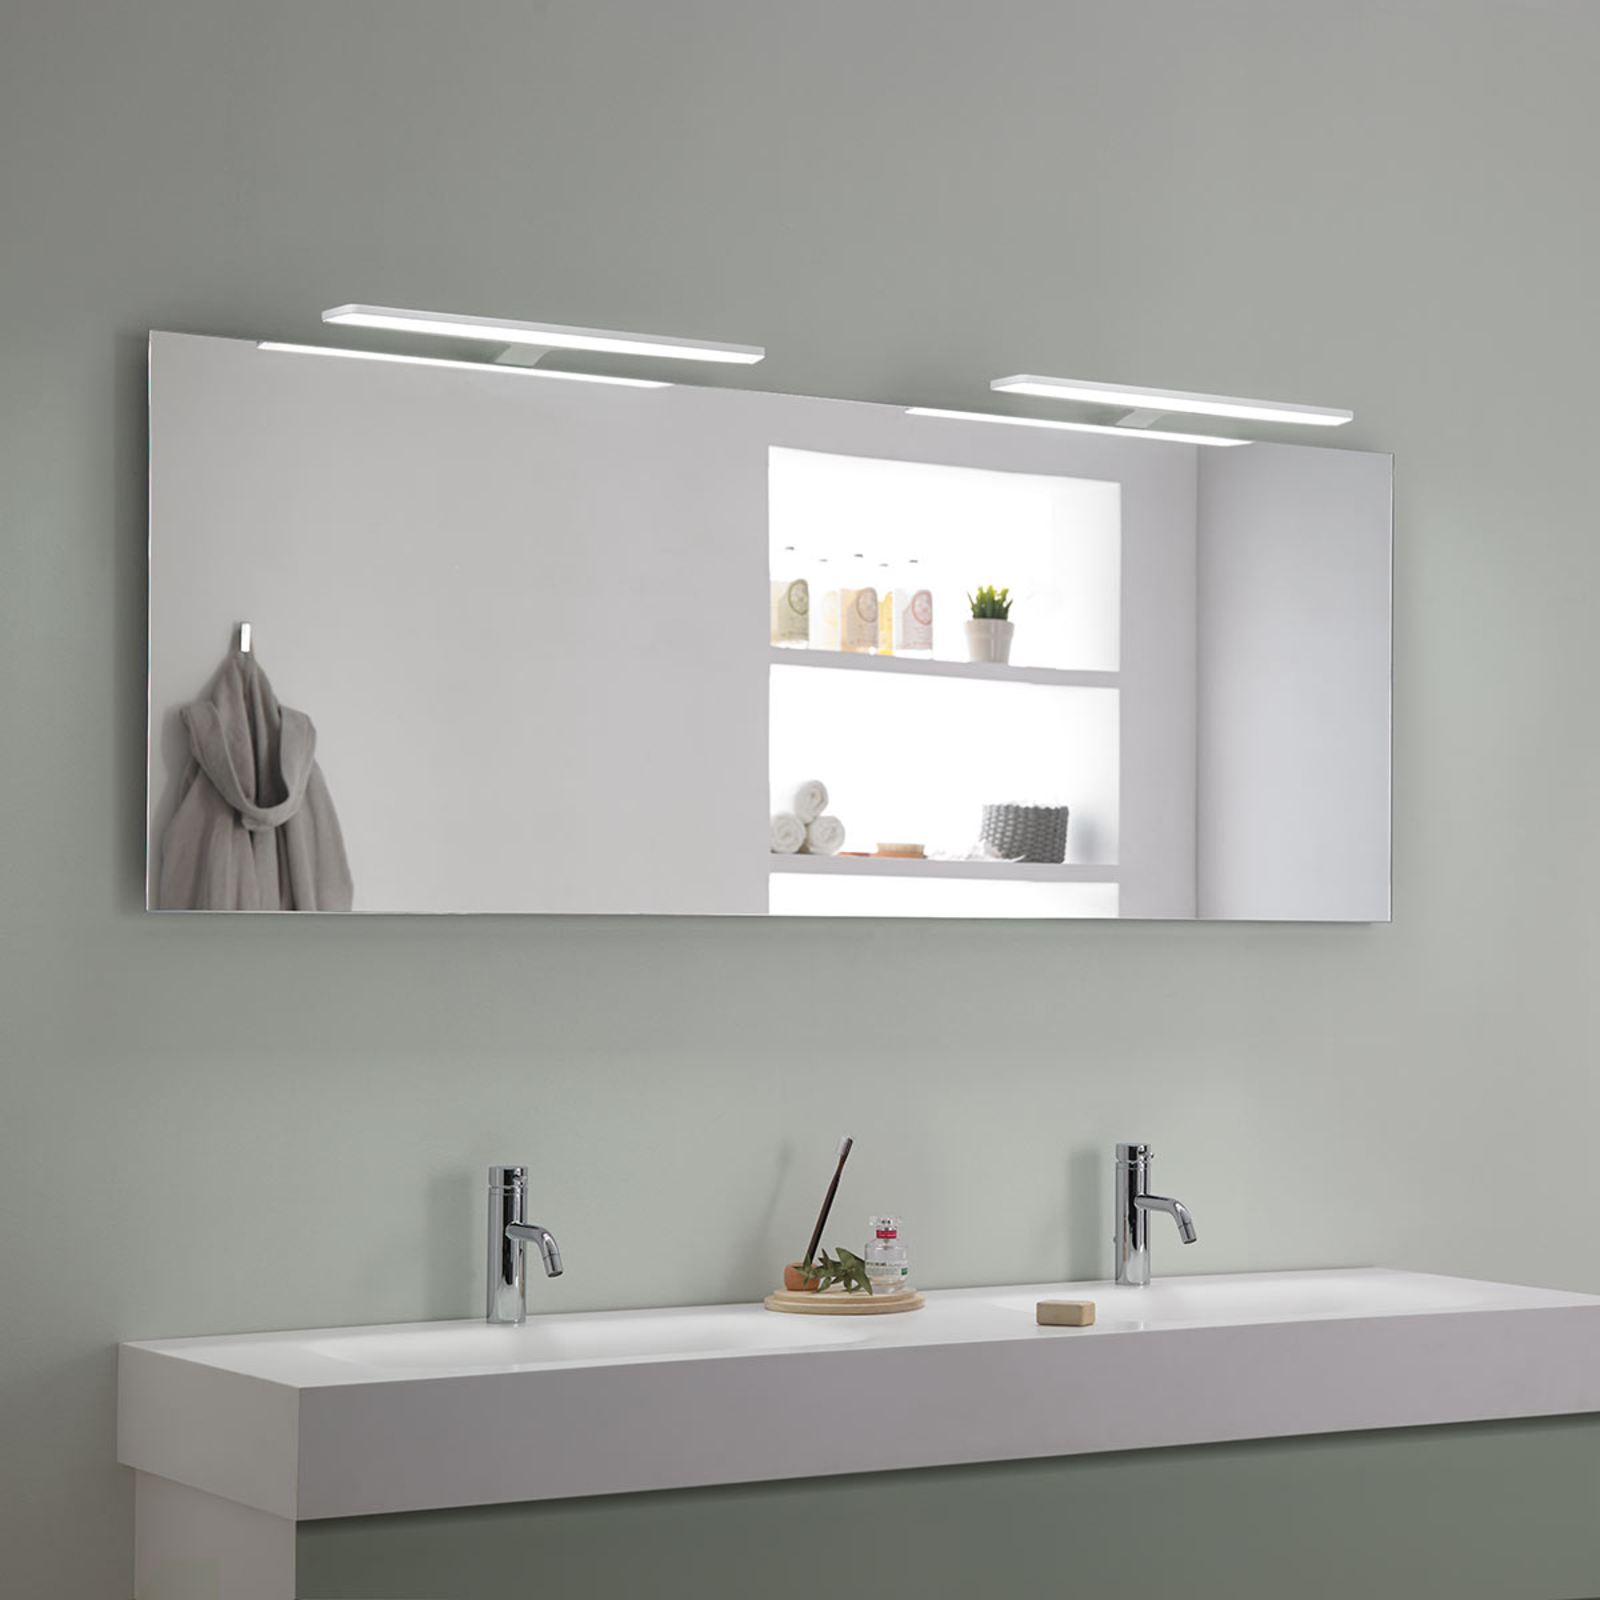 Nayra – bílé LED svítidlo nad zrcadlo